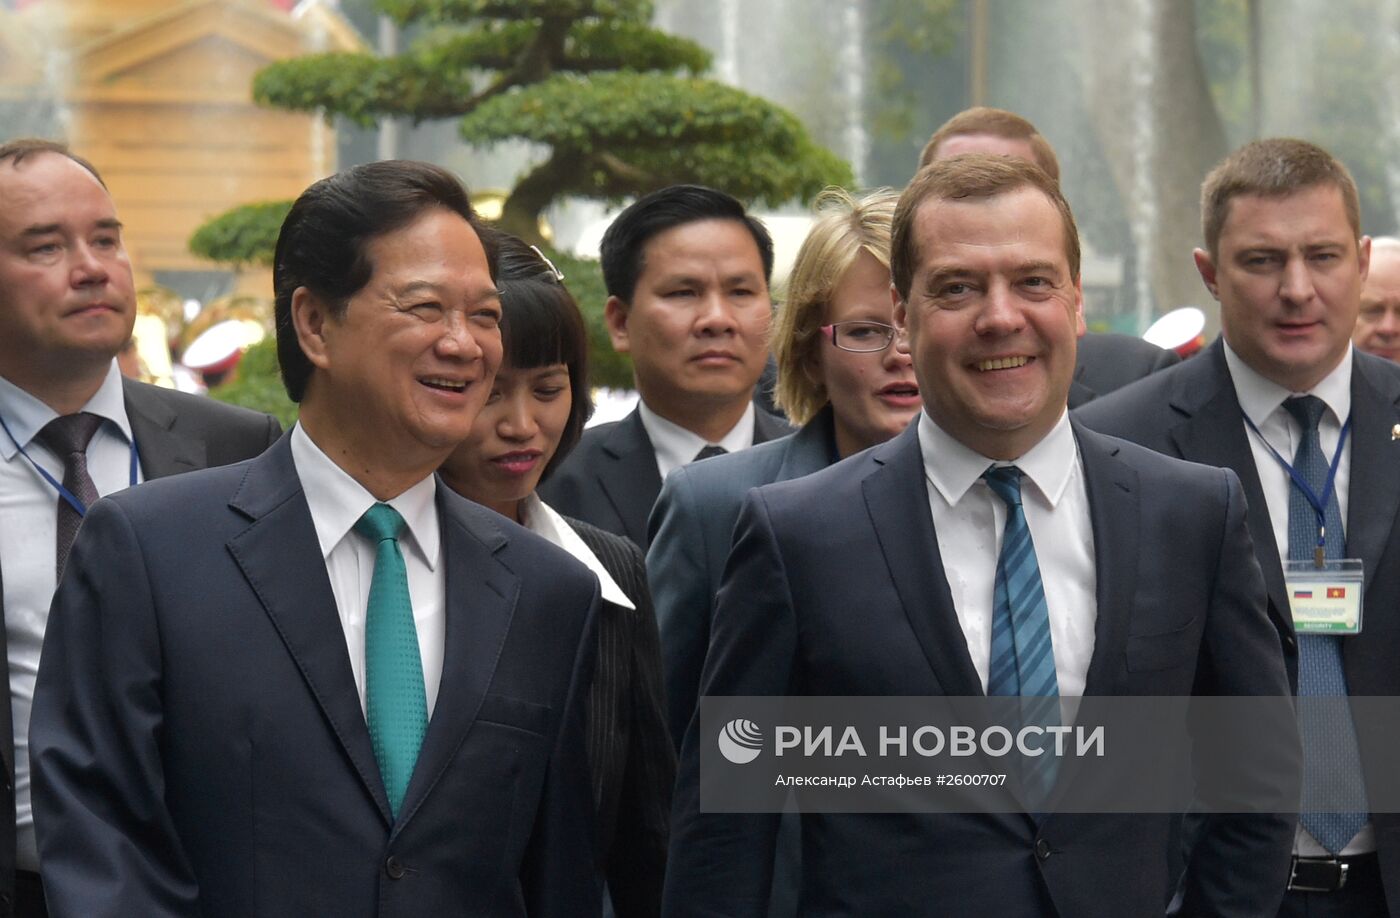 Официальный визит премьер-министра Д.Медведева во Вьетнам